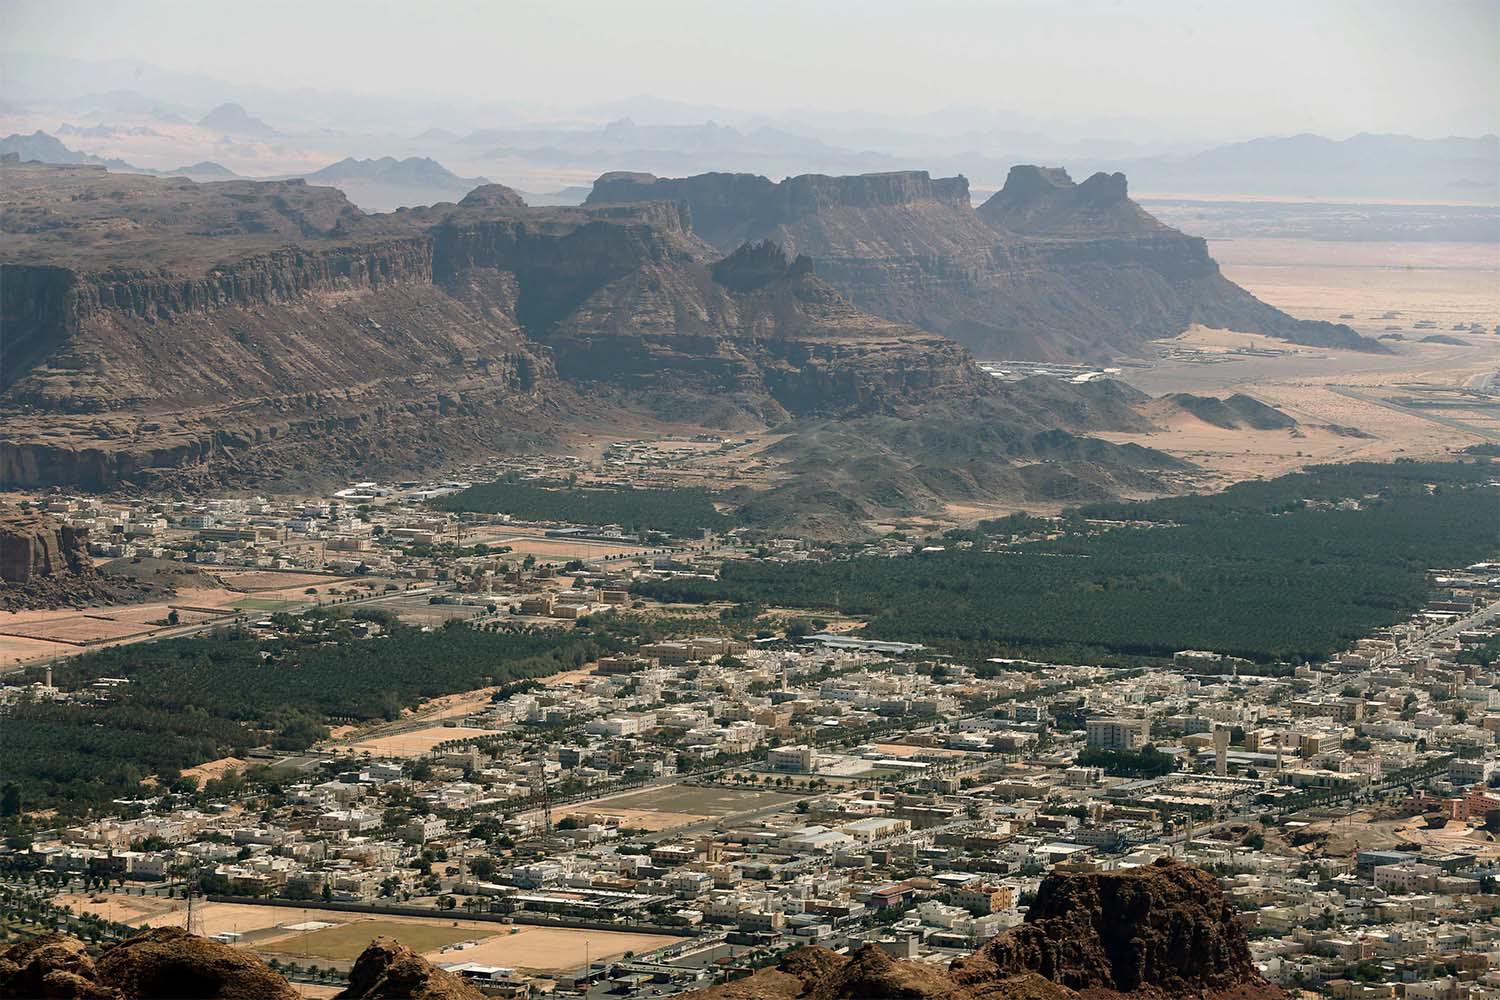 General view of al-Ula city